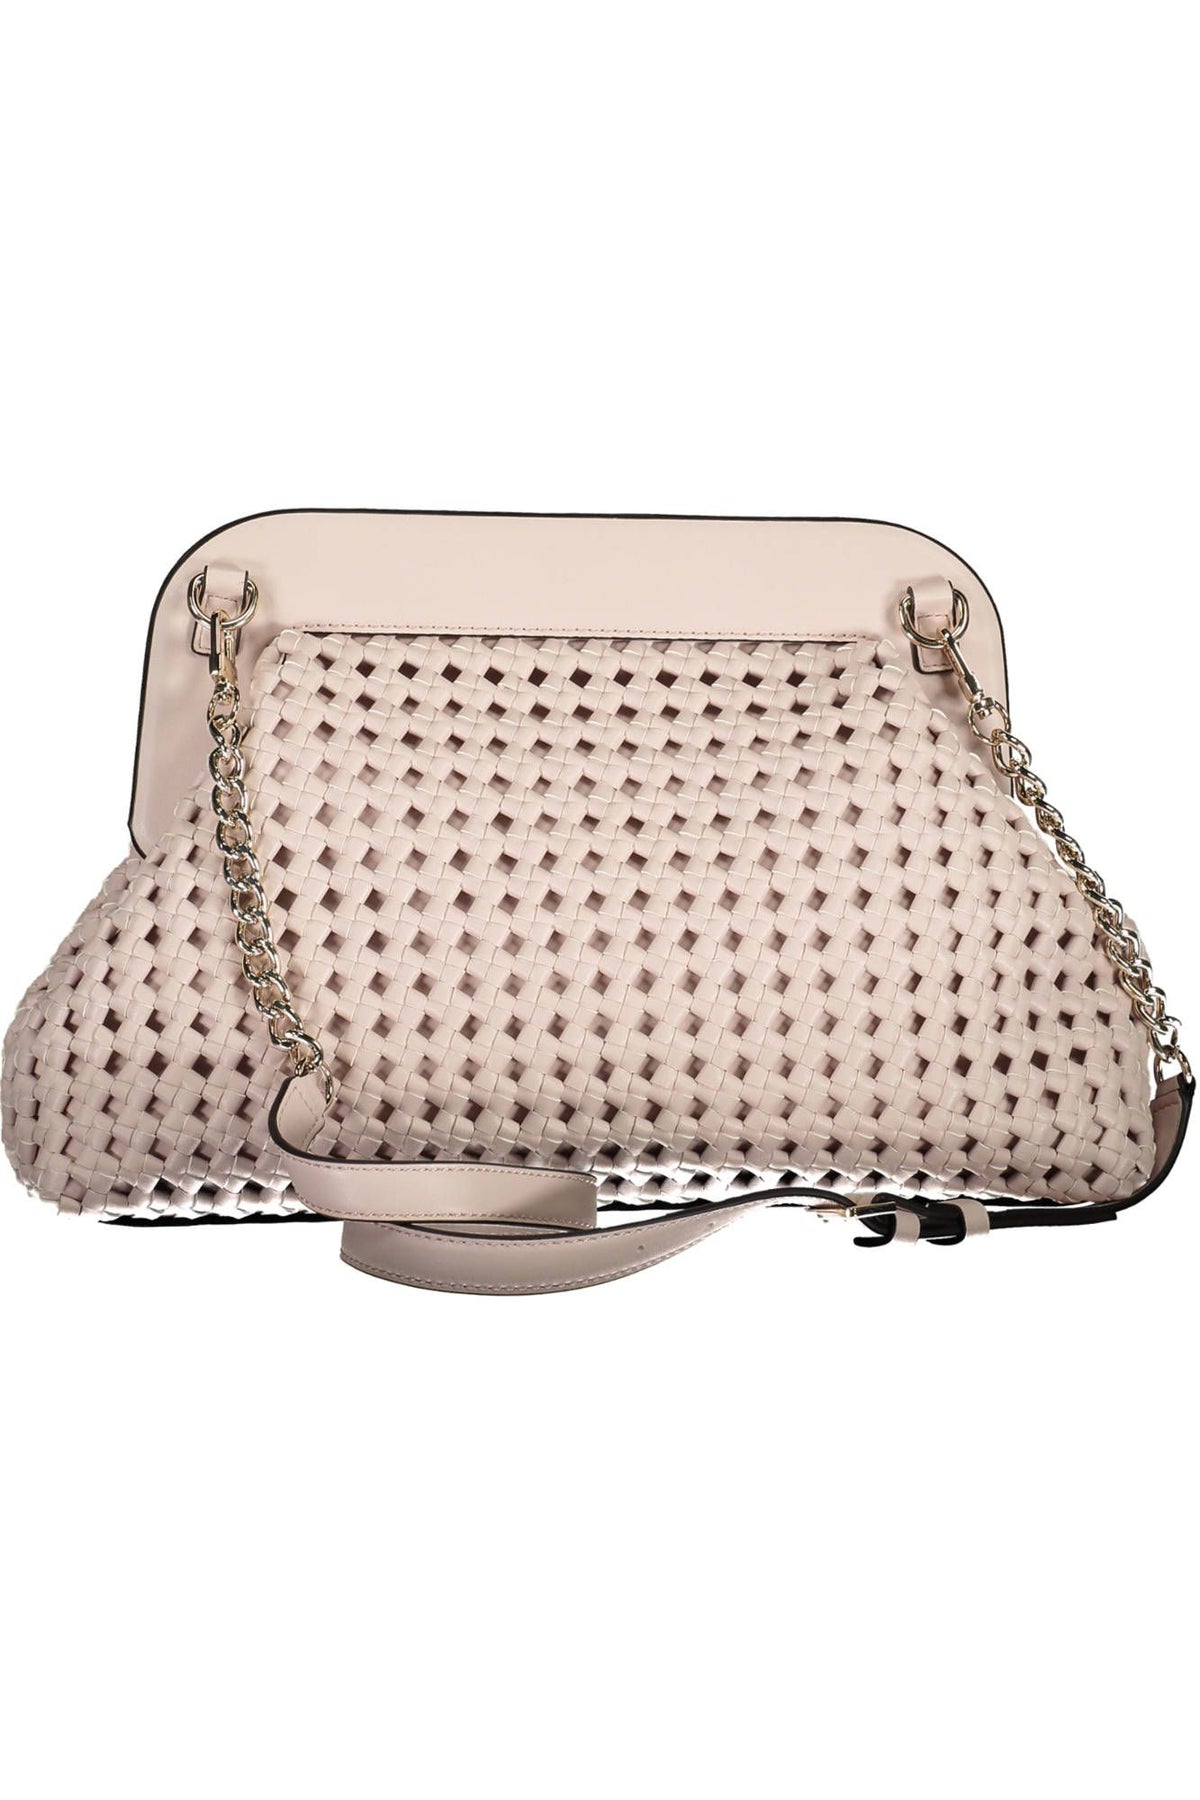 Guess Jeans Elegant Pink Handbag with Contrasting Details